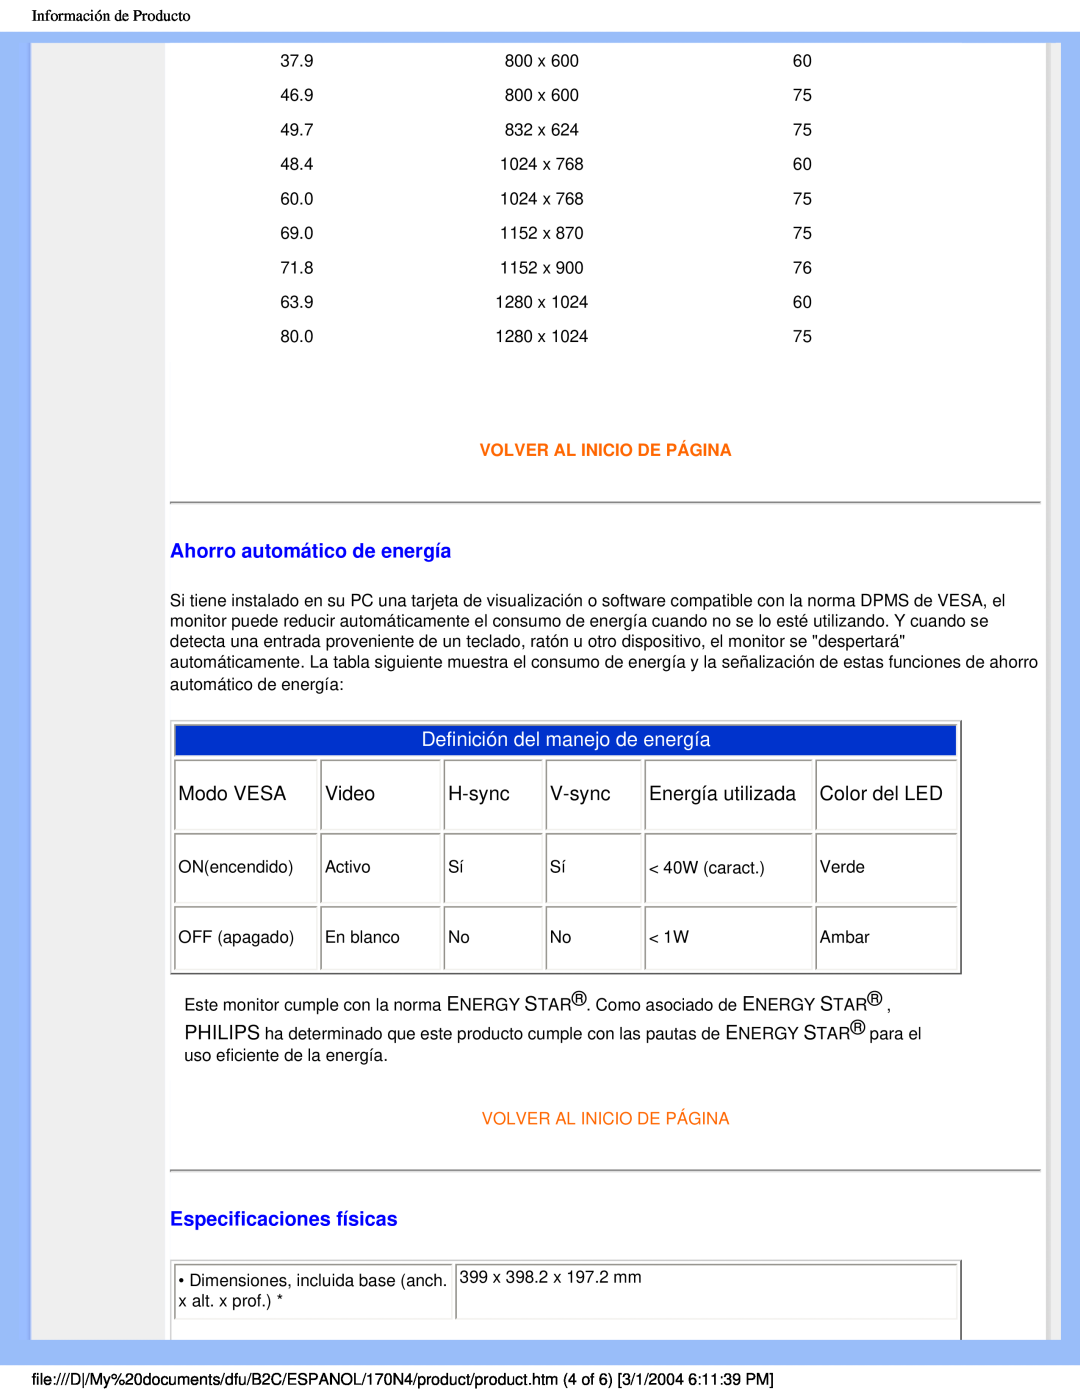 Philips 170N4 user manual Ahorro automático de energía, Definición del manejo de energía, Especificaciones físicas 